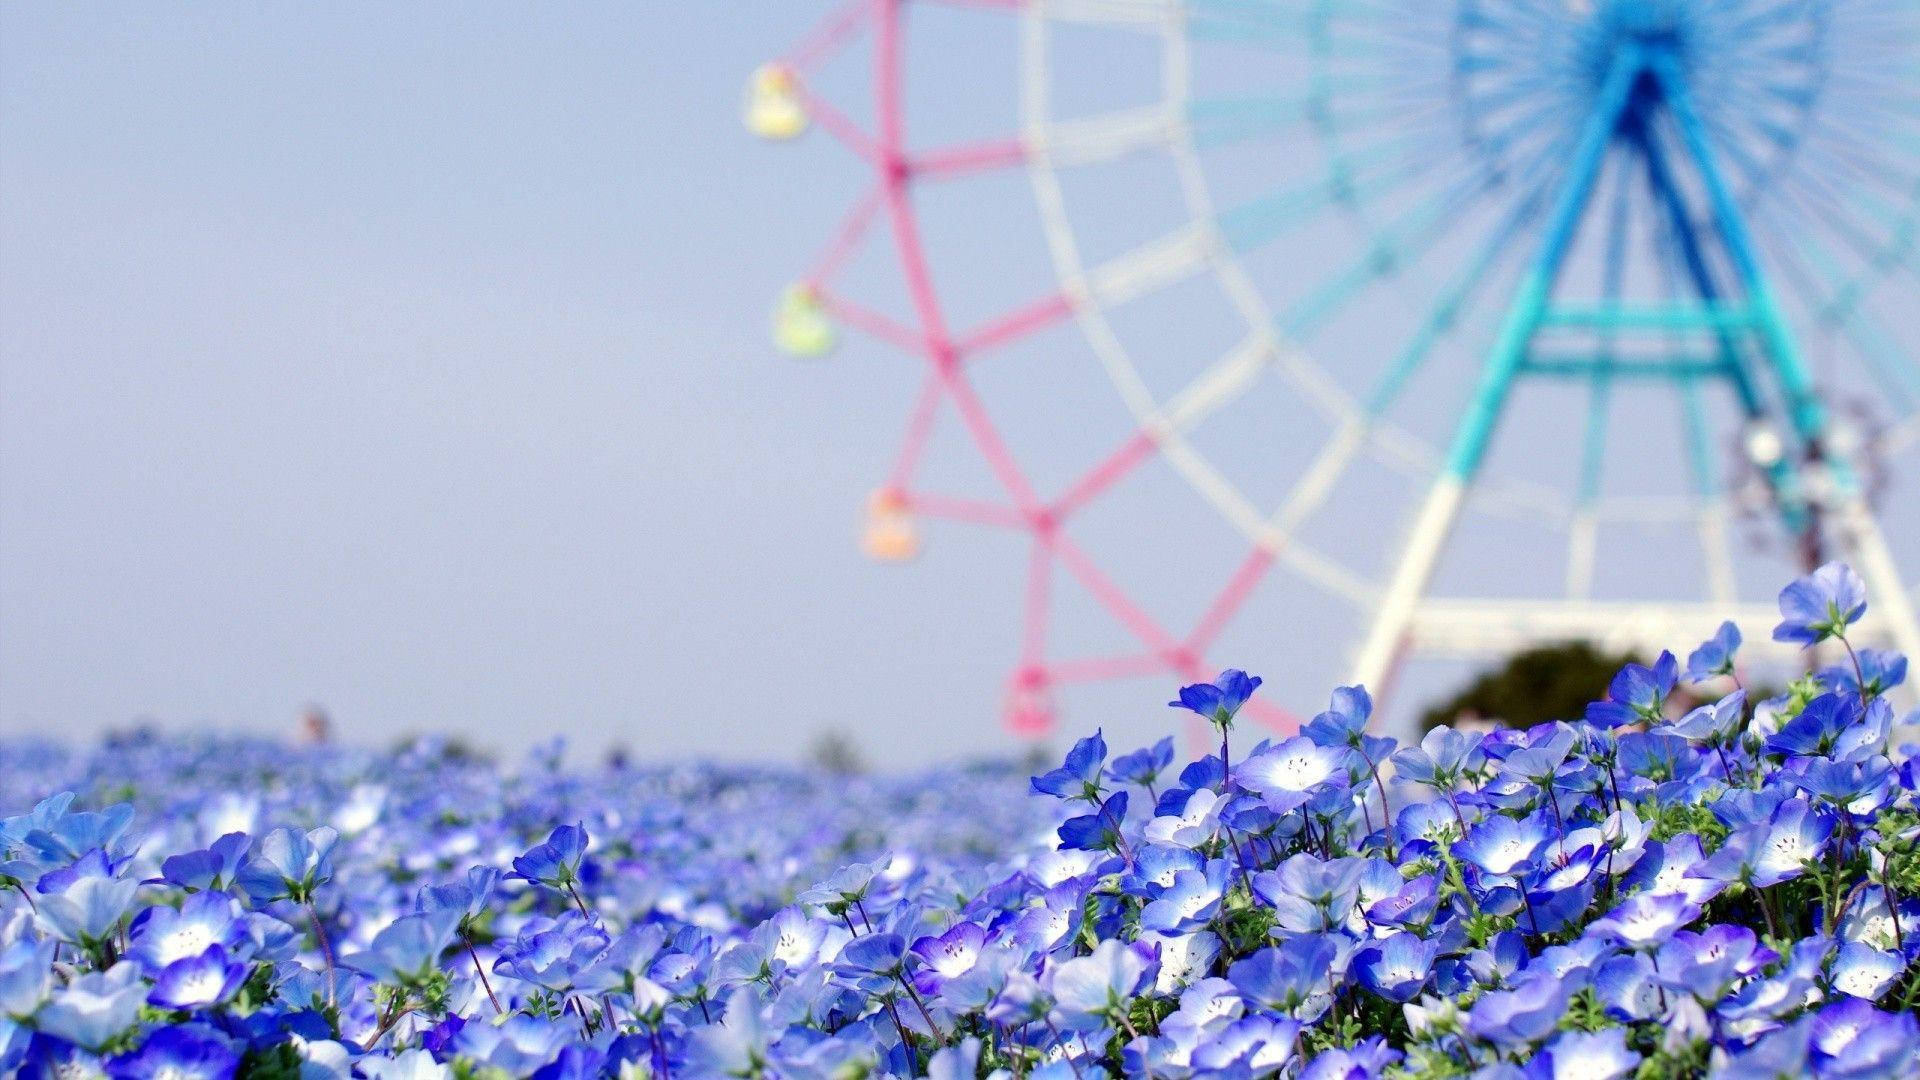 Oklarpariserhjul Med Blå Blommor. Wallpaper